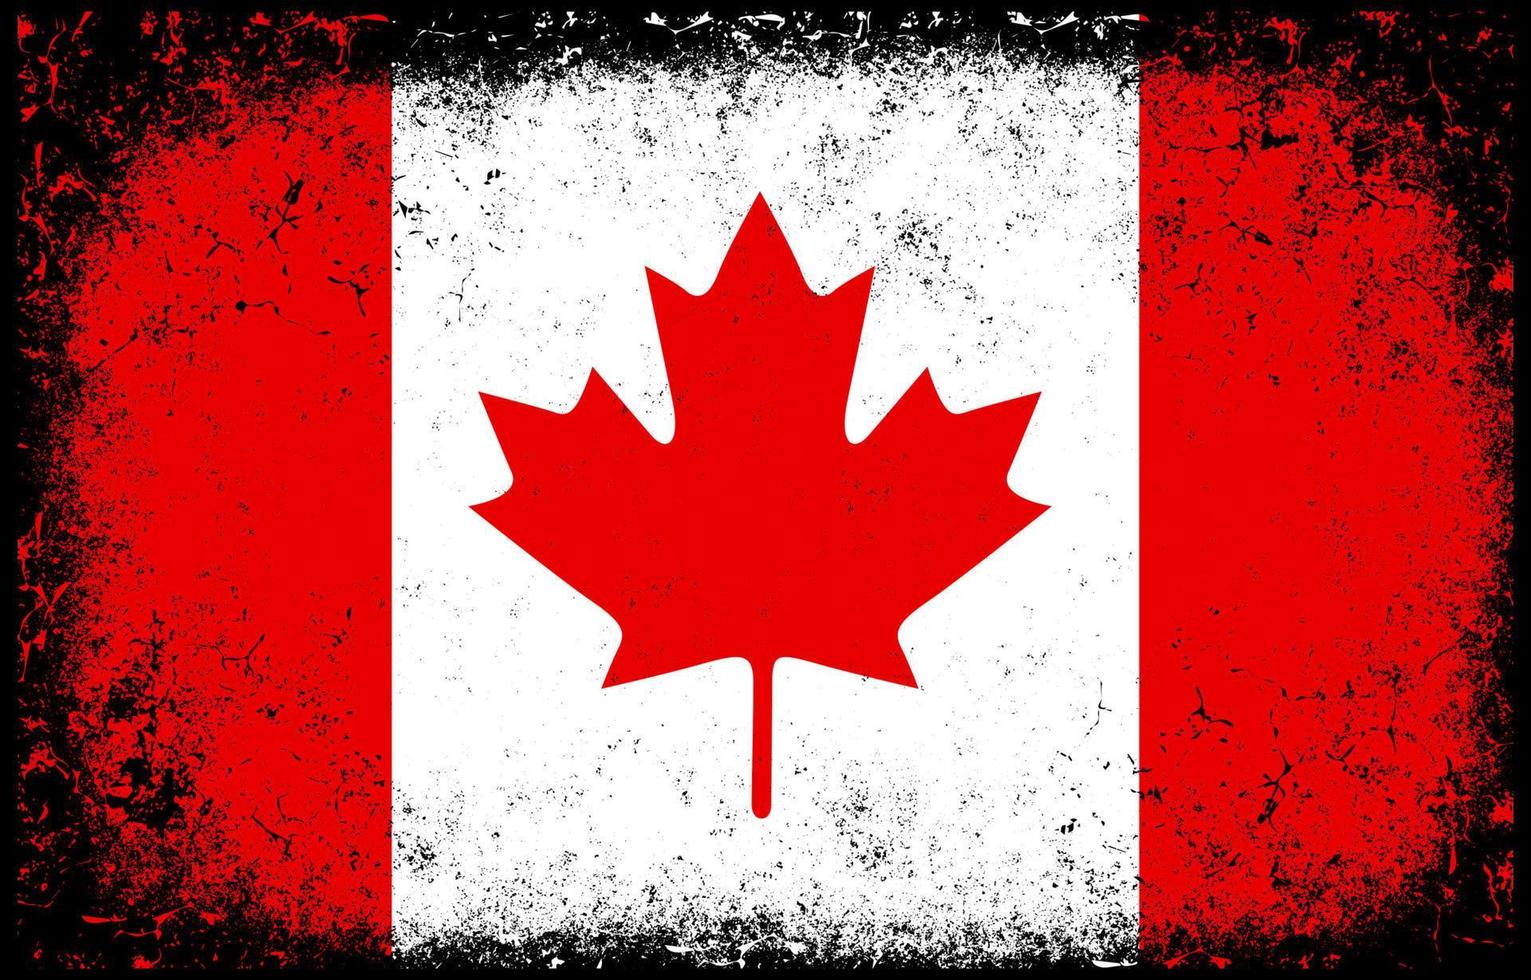 viejo sucio grunge vintage canadá bandera nacional ilustración vector